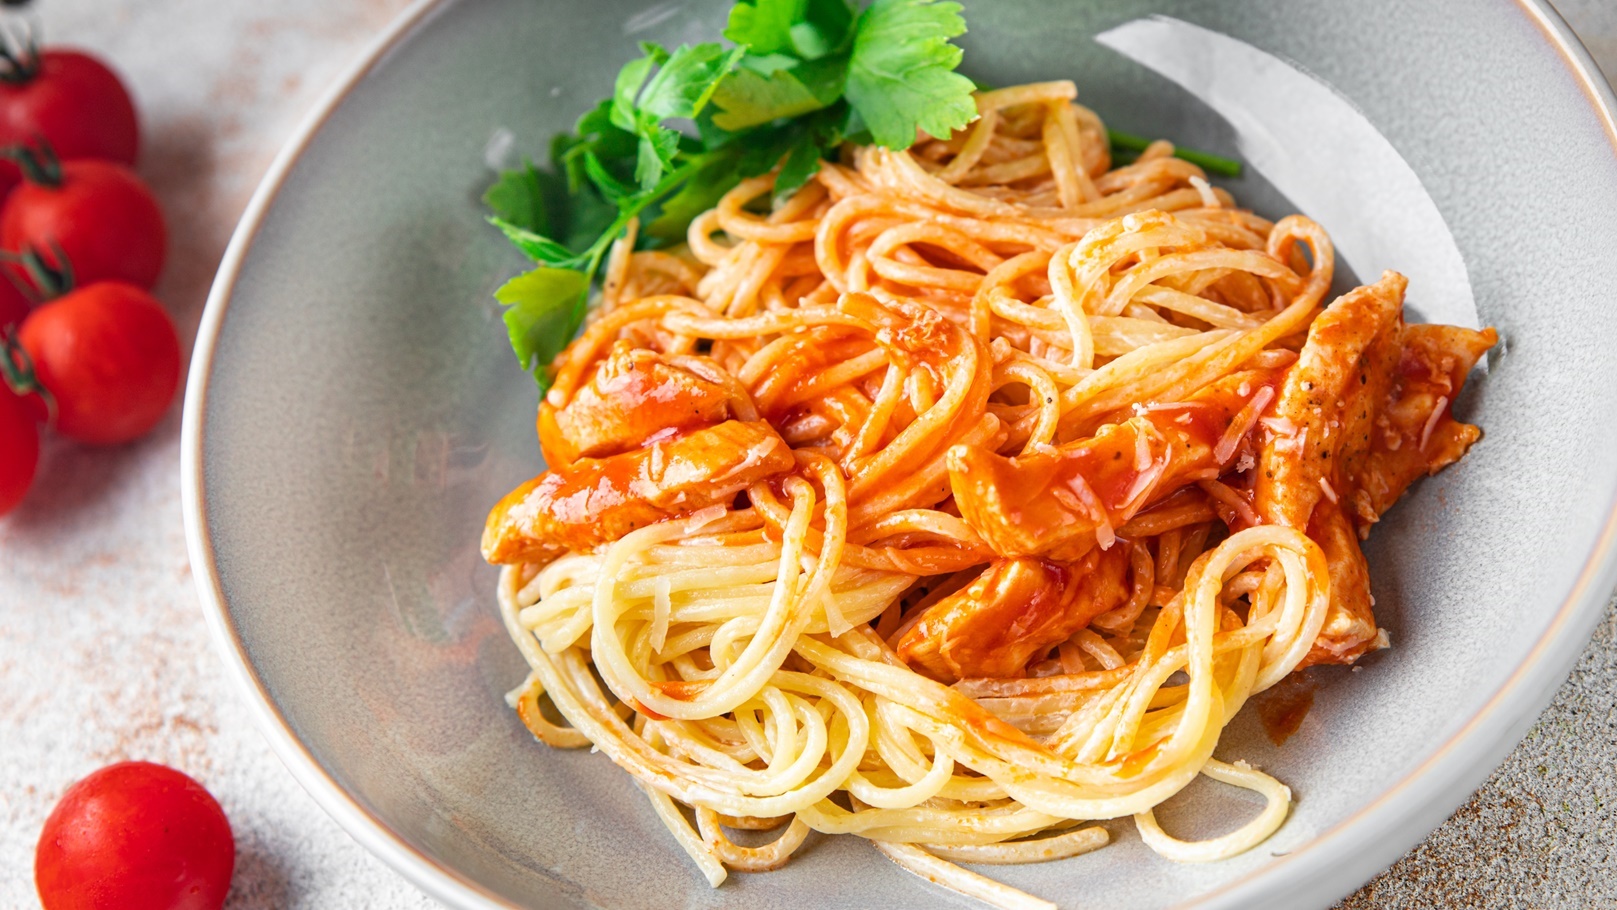 pasta-spaghetti-tomato-sauce-chicken-meat-turkey-h-2021-12-16-19-13-17-utc